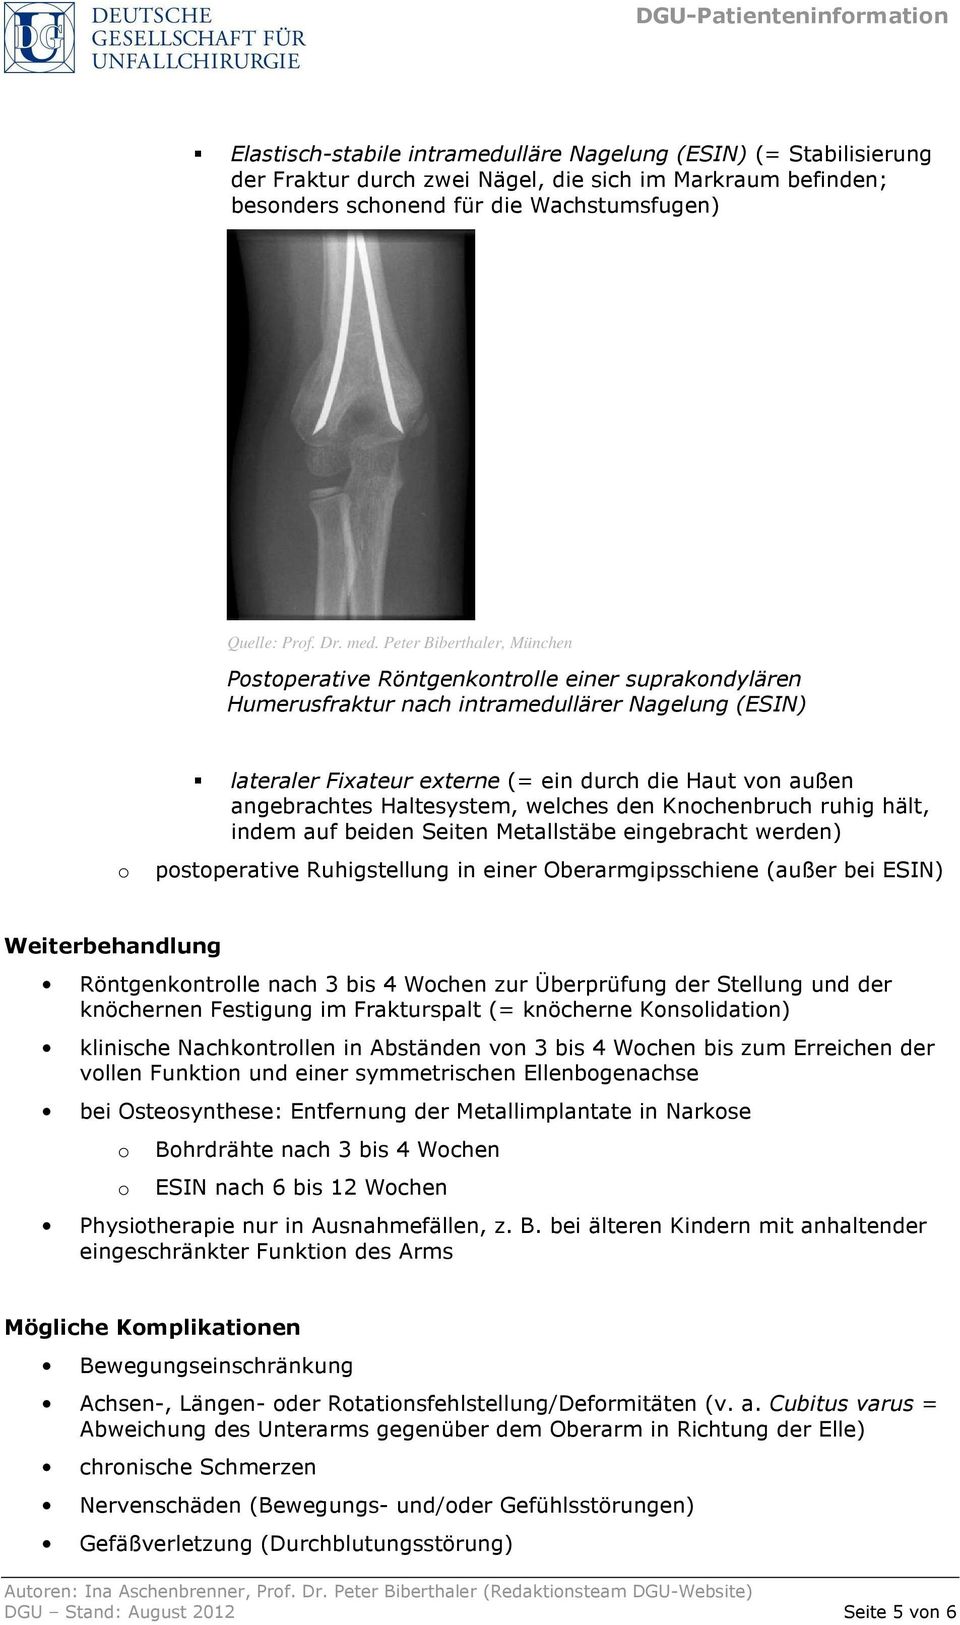 Peter Biberthaler, München Pstperative Röntgenkntrlle einer suprakndylären Humerusfraktur nach intramedullärer Nagelung (ESIN) lateraler Fixateur externe (= ein durch die Haut vn außen angebrachtes